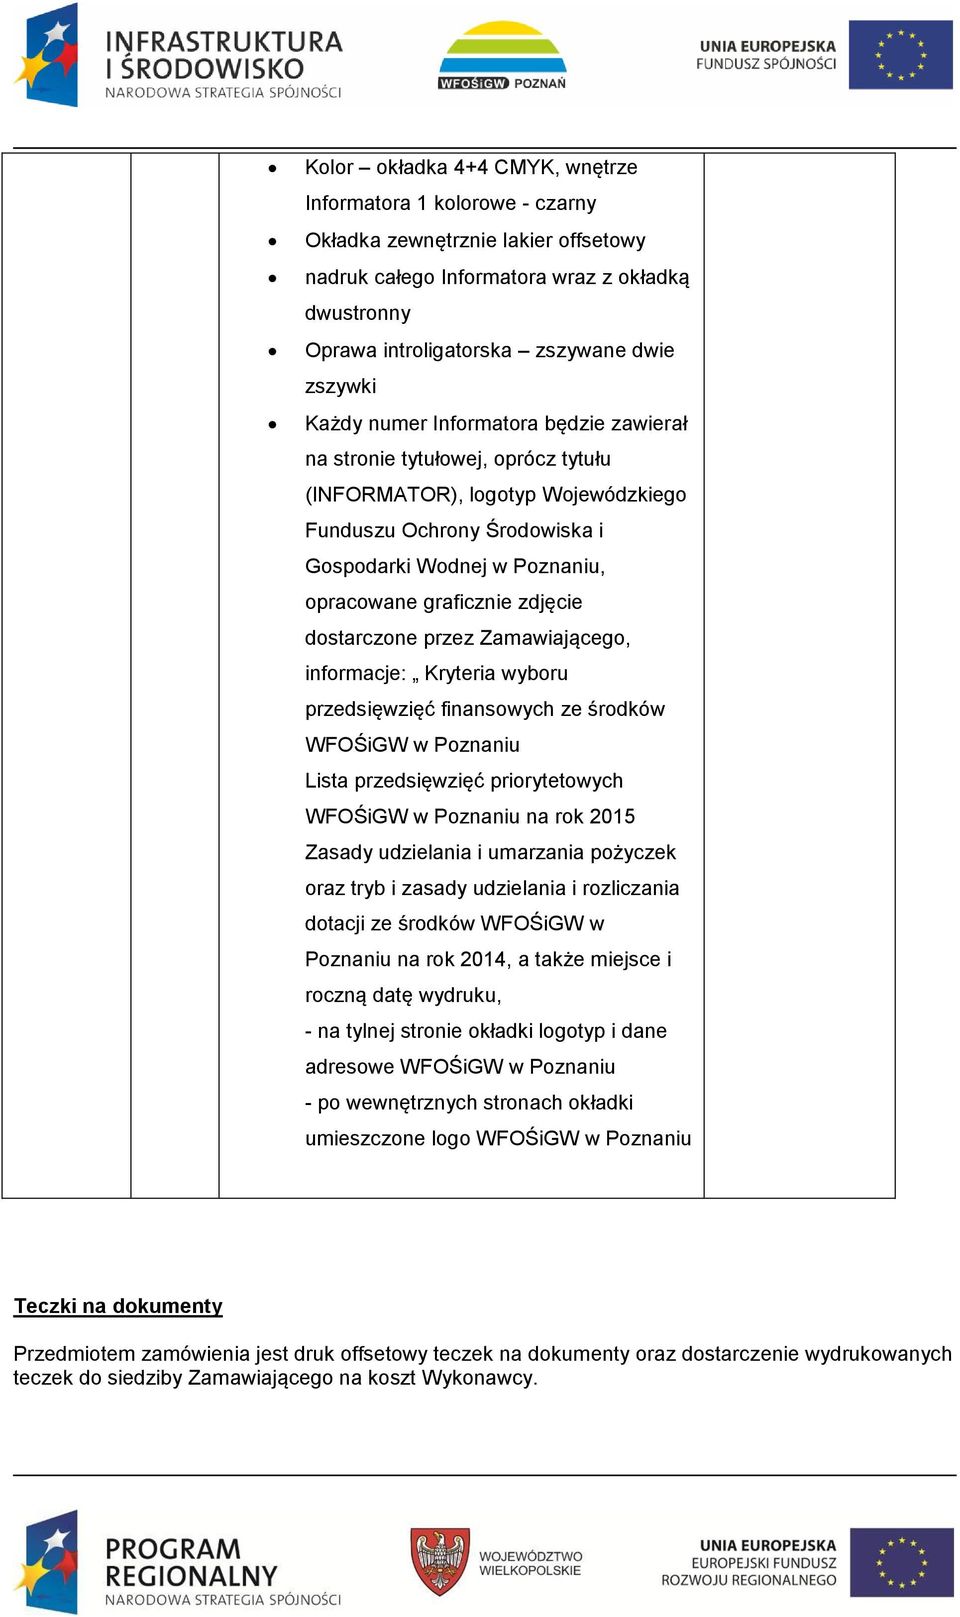 zdjęcie dostarczone przez Zamawiającego, informacje: Kryteria wyboru przedsięwzięć finansowych ze środków WFOŚiGW w Poznaniu Lista przedsięwzięć priorytetowych WFOŚiGW w Poznaniu na rok 2015 Zasady